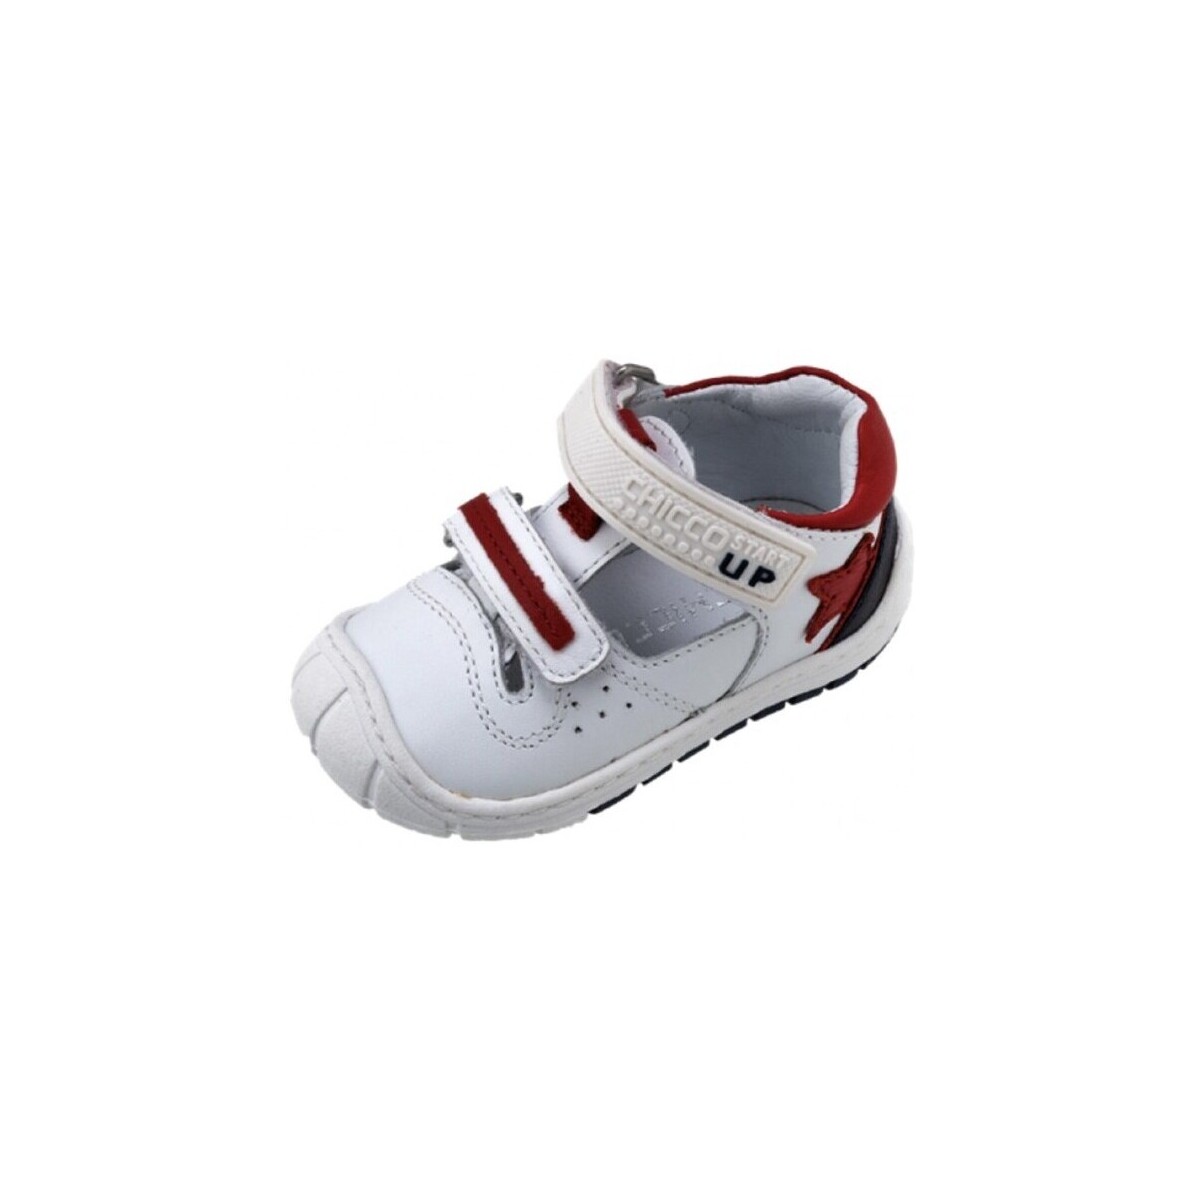 Chaussures Garçon Je souhaite recevoir les bons plans des partenaires de JmksportShops 25187-15 Blanc